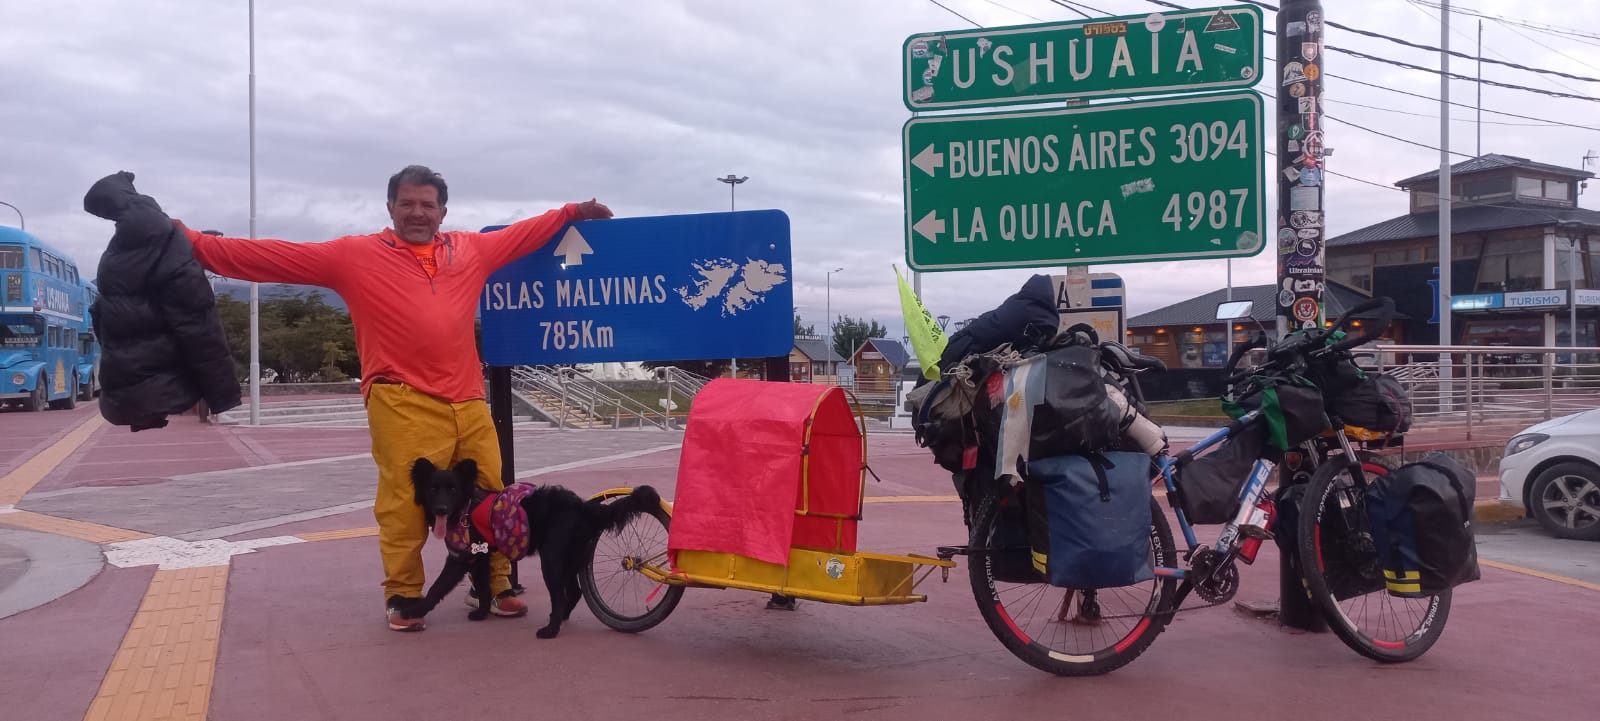 Sueño cumplido. Sábado 22 de enero. Jorge Gómez y Lola llegan a Ushuaia. Foto: Jorge Gómez / Memorias de Bicicleta. 